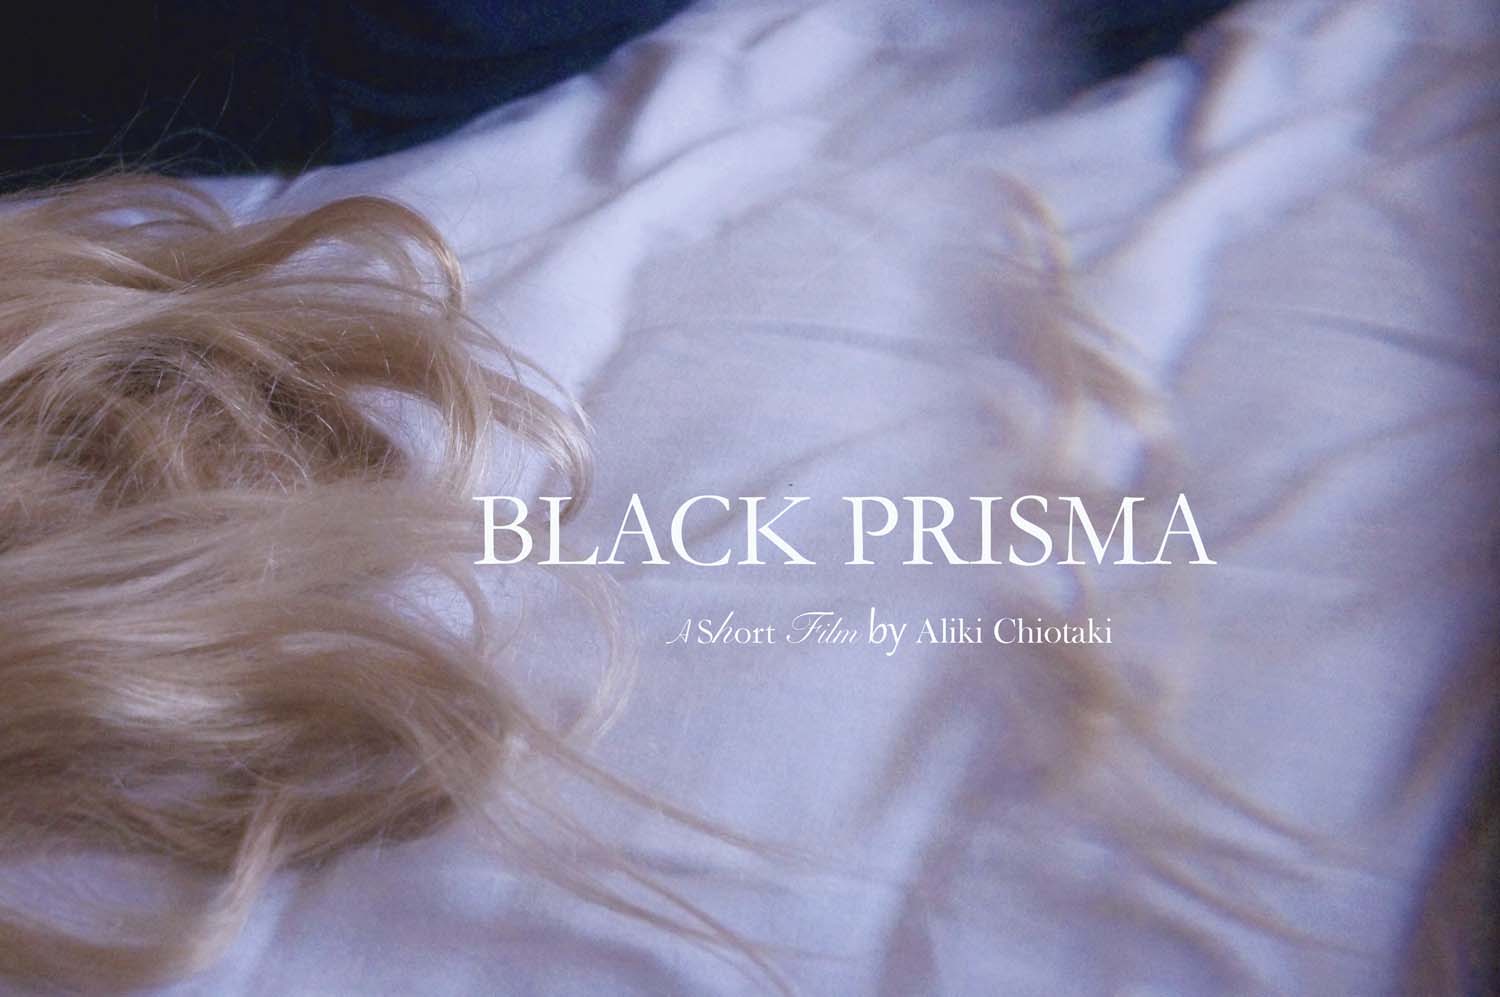 Στο ΚΑΜ η πρεμιέρα της ταινίας “Black Prisma”